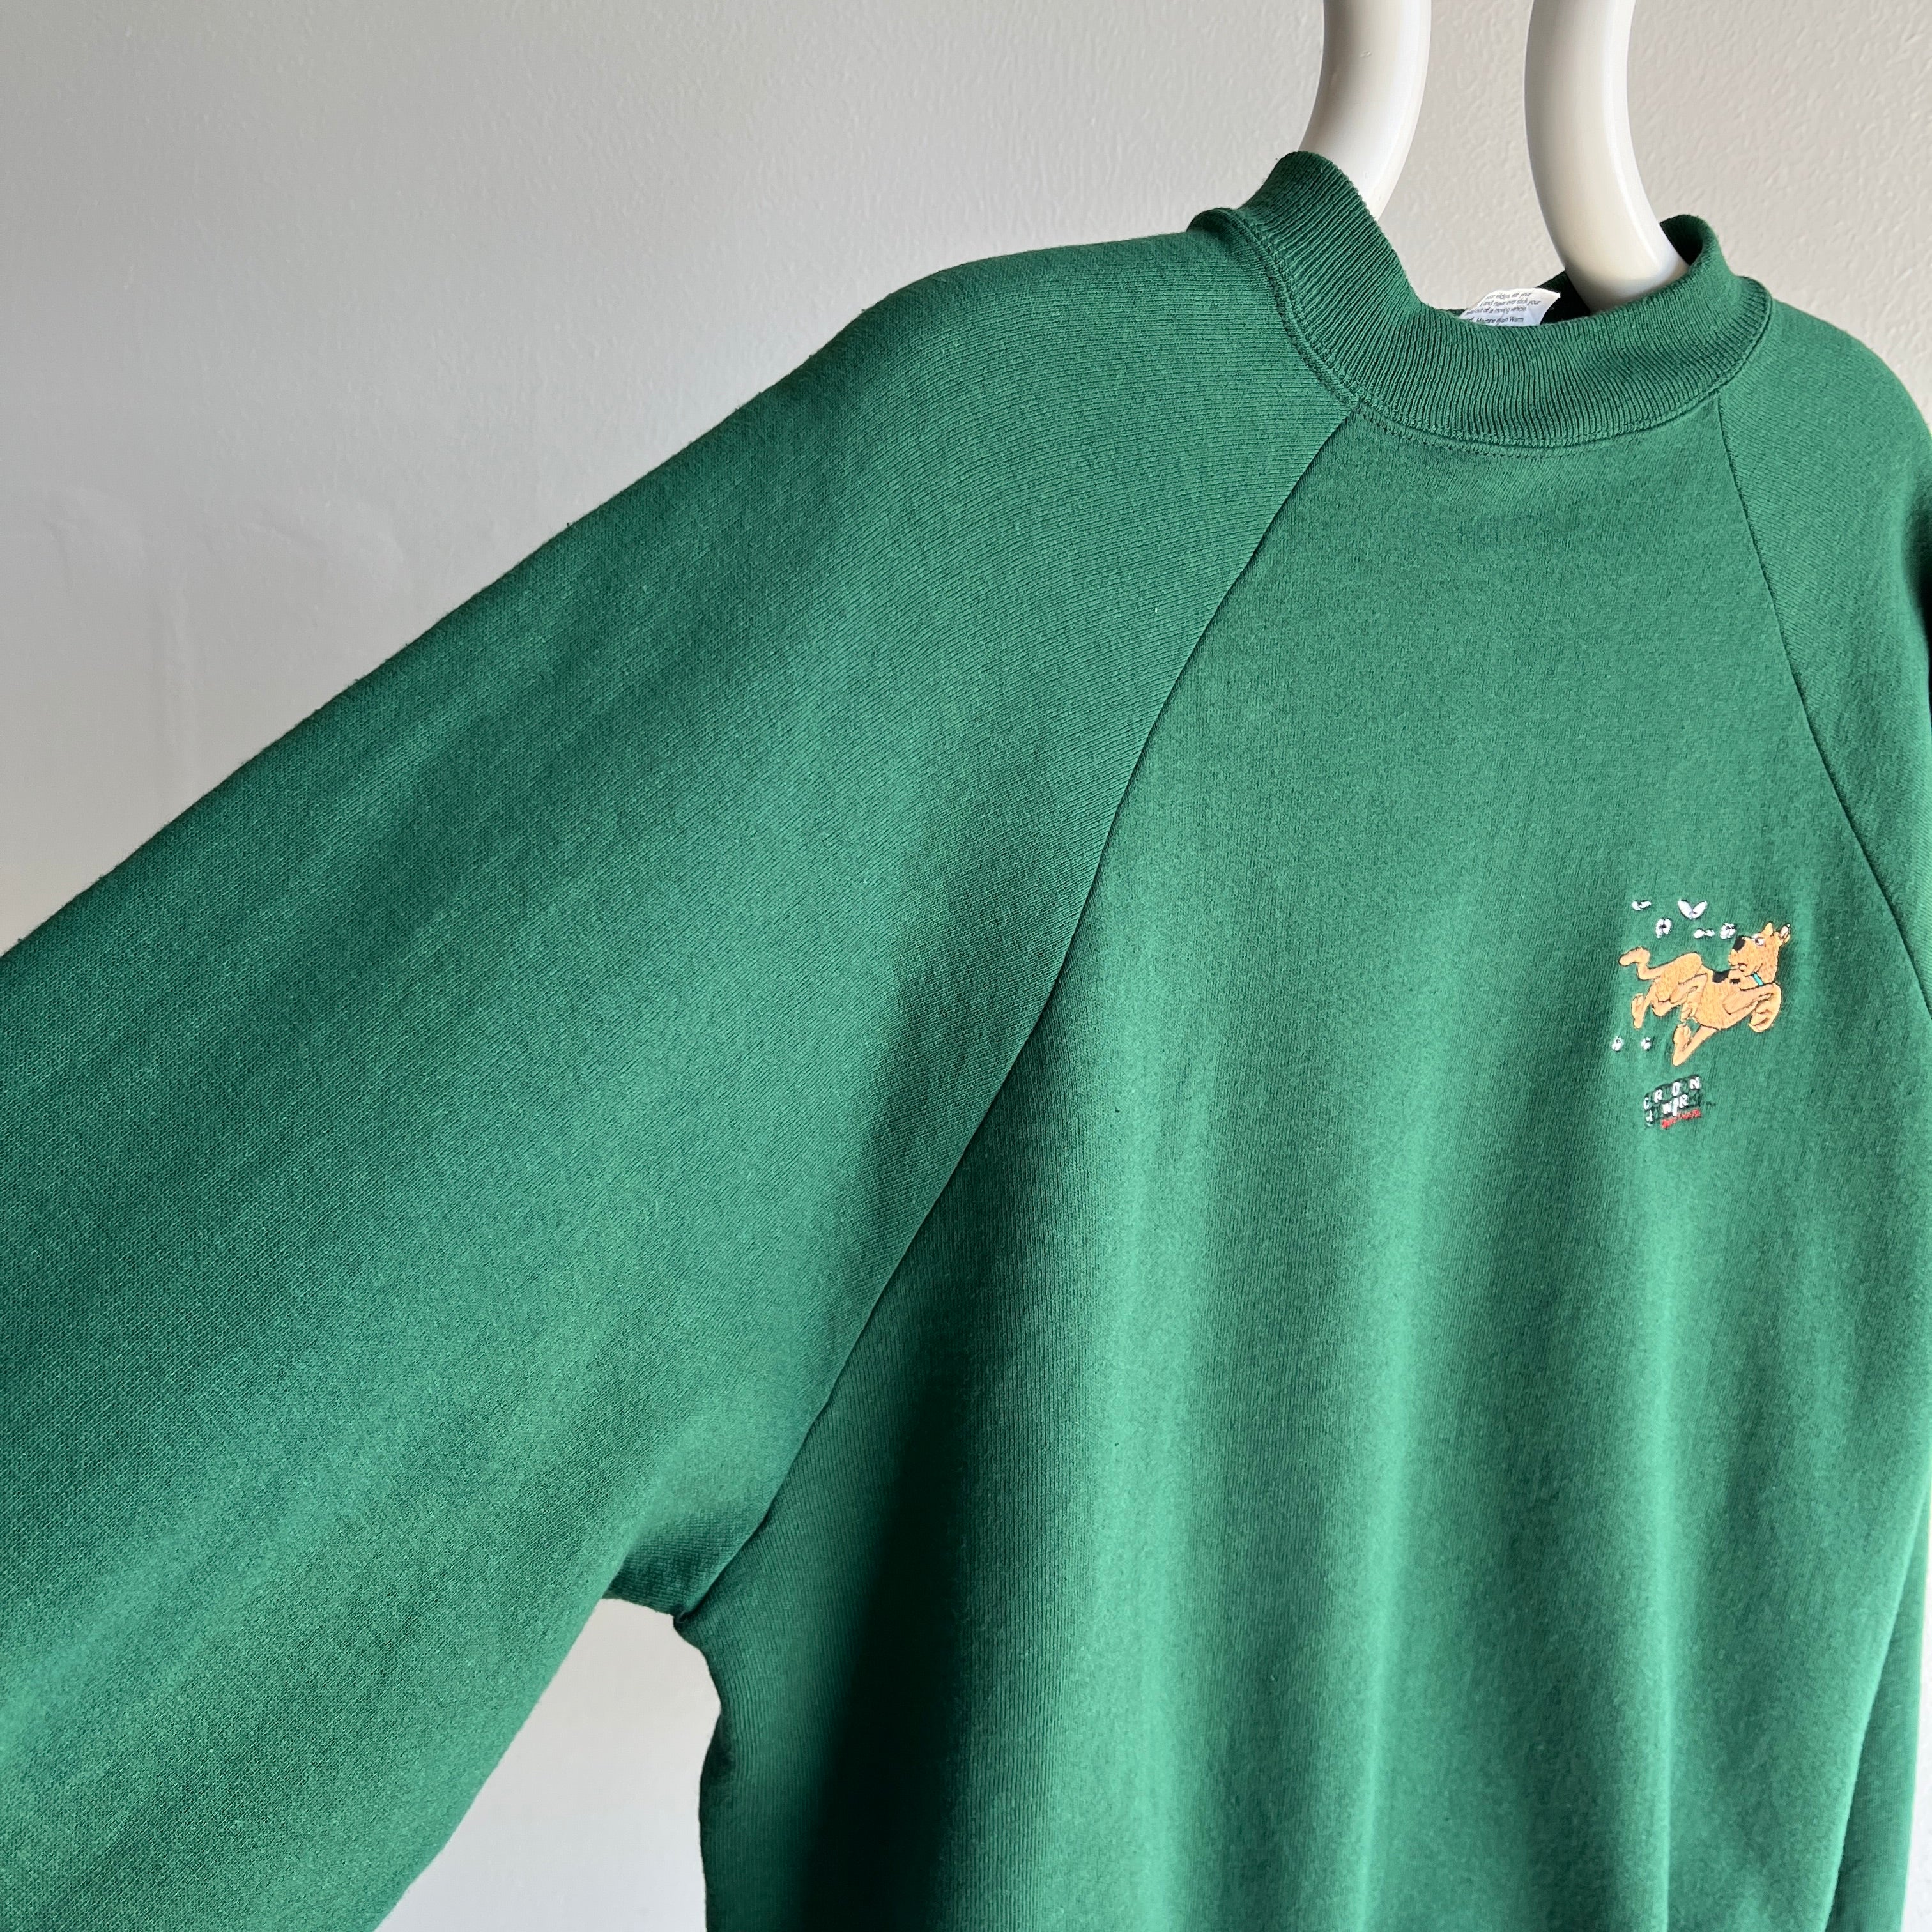 1980/90s Cartoon Network Scooby Doo Sweatshirt